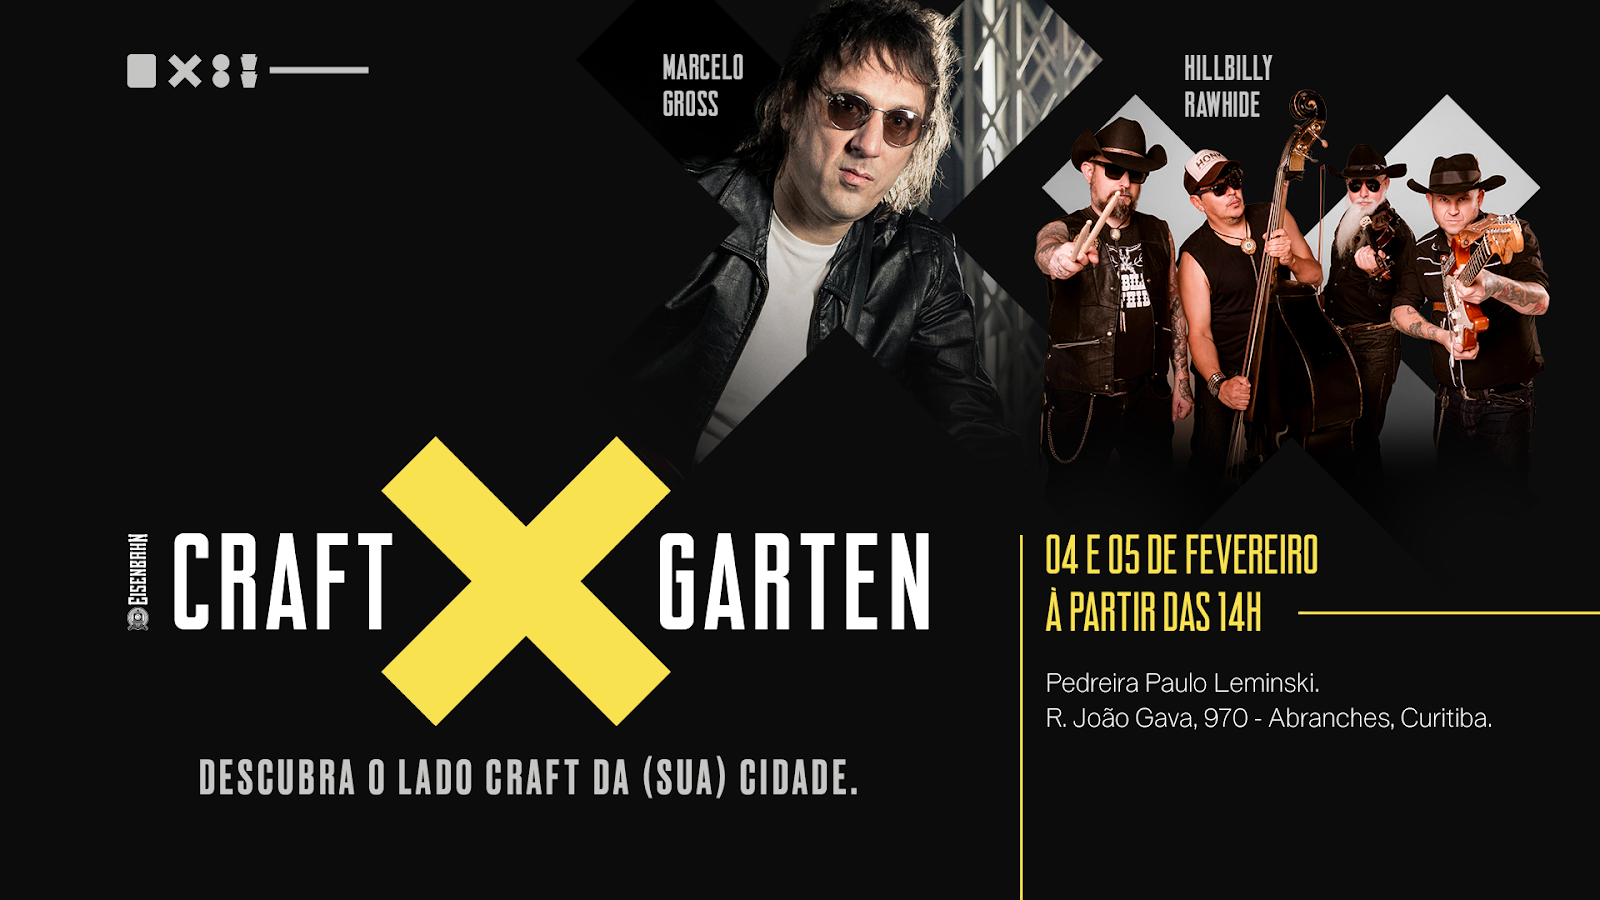 Eisenbahn Craft Garten chega a Curitiba nos dias 4 e 5 de fevereiro com muita musica arte e gastronomia POP CYBER